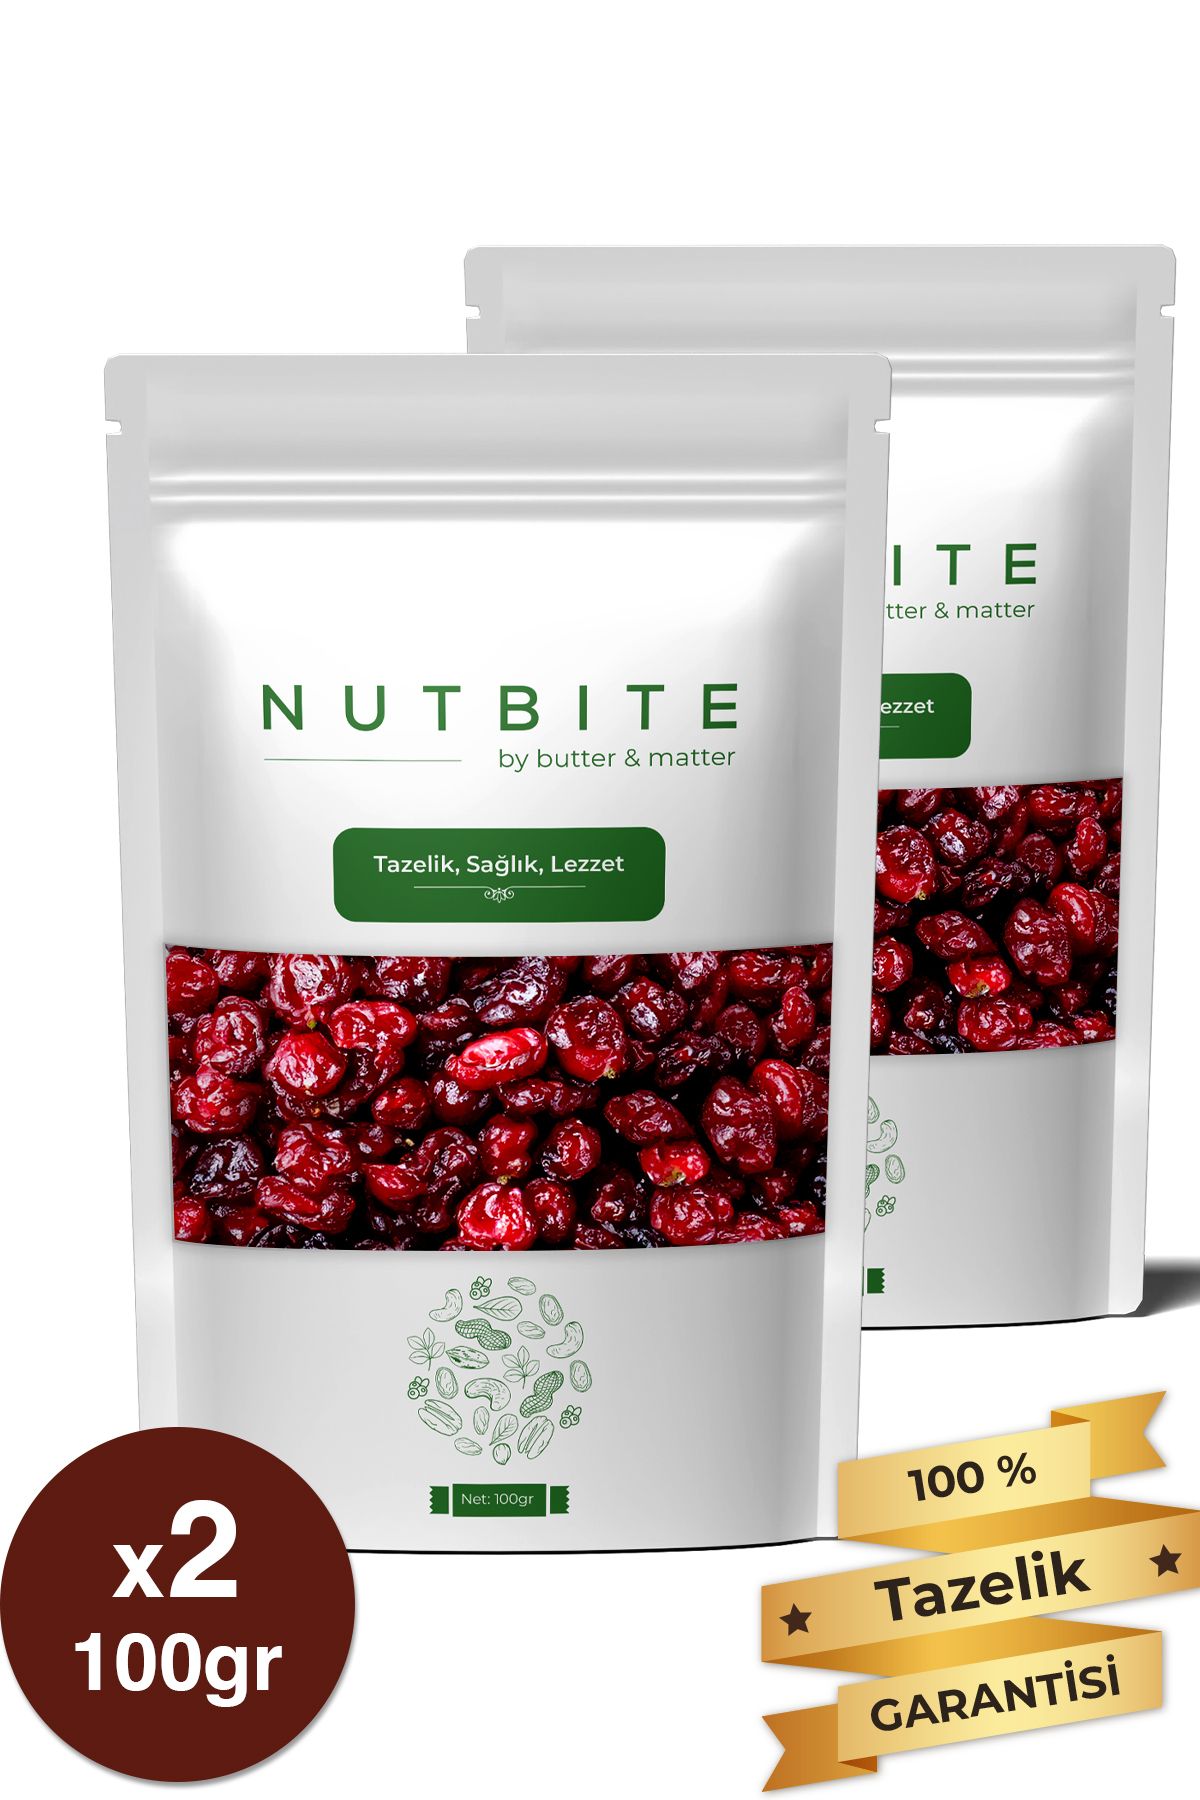 NUTBITE Premium Turna Yemişi 200gr - Cranberry - Çekirdeksiz Tane - Taptaze Yeni Mahsül